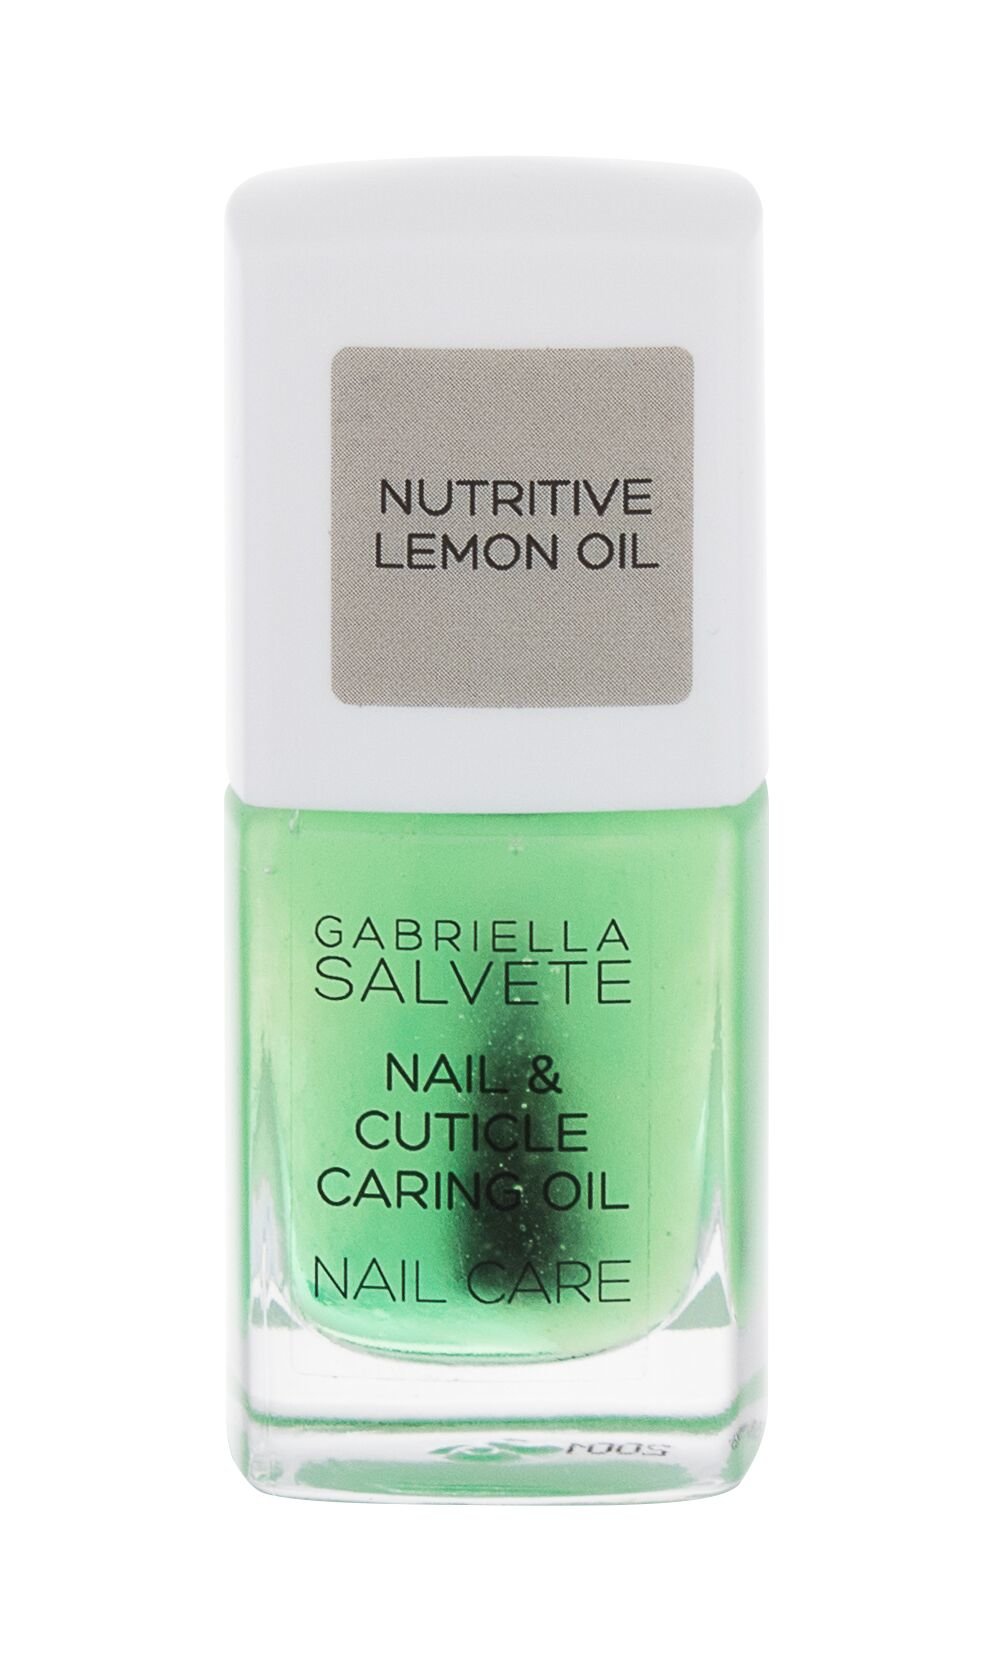 Gabriella Salvete Nail Care Nail & Cuticle Caring Oil 11ml nagų priežiūrai